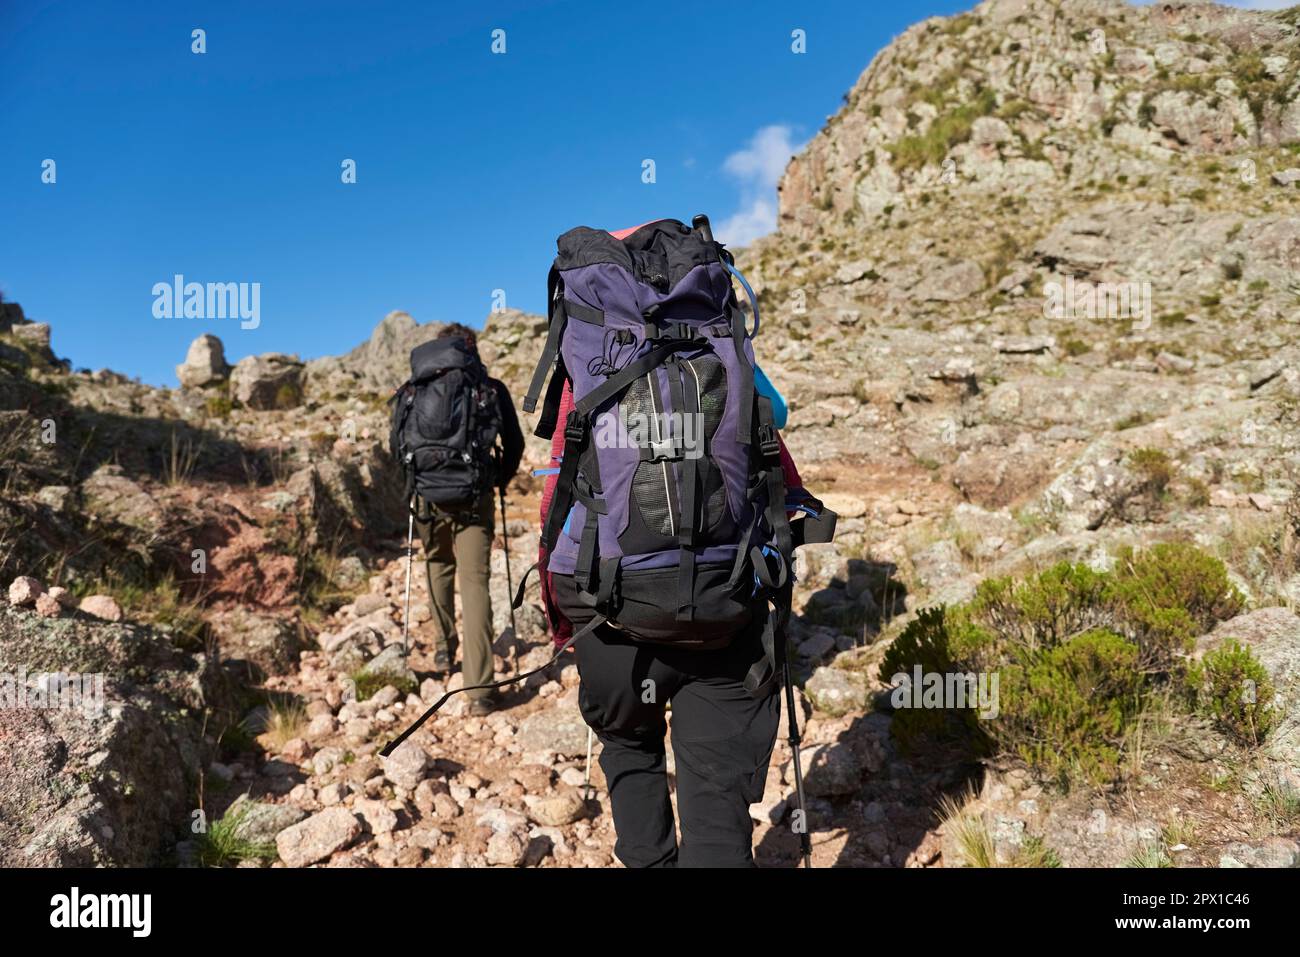 Alpinisti irriconoscibili che camminano su un sentiero in mezzo a un paesaggio roccioso di montagna a Los Gigantes, Cordoba, Argentina, una destinazione turistica ideale. Foto Stock